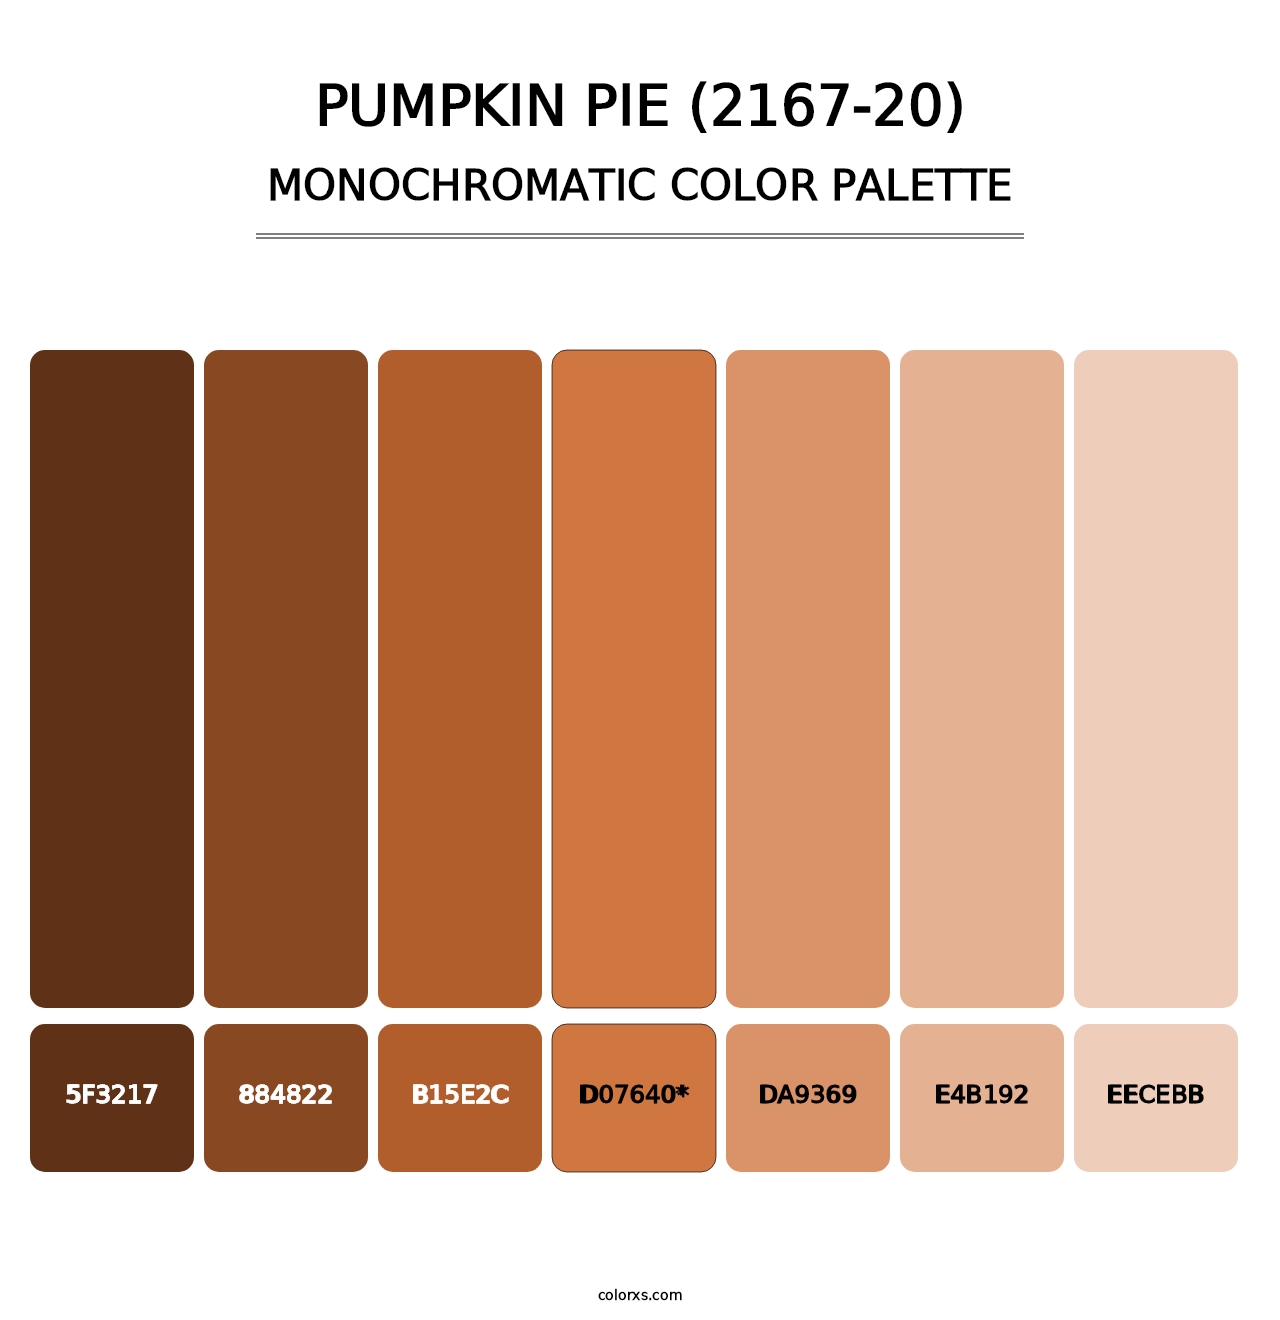 Pumpkin Pie (2167-20) - Monochromatic Color Palette